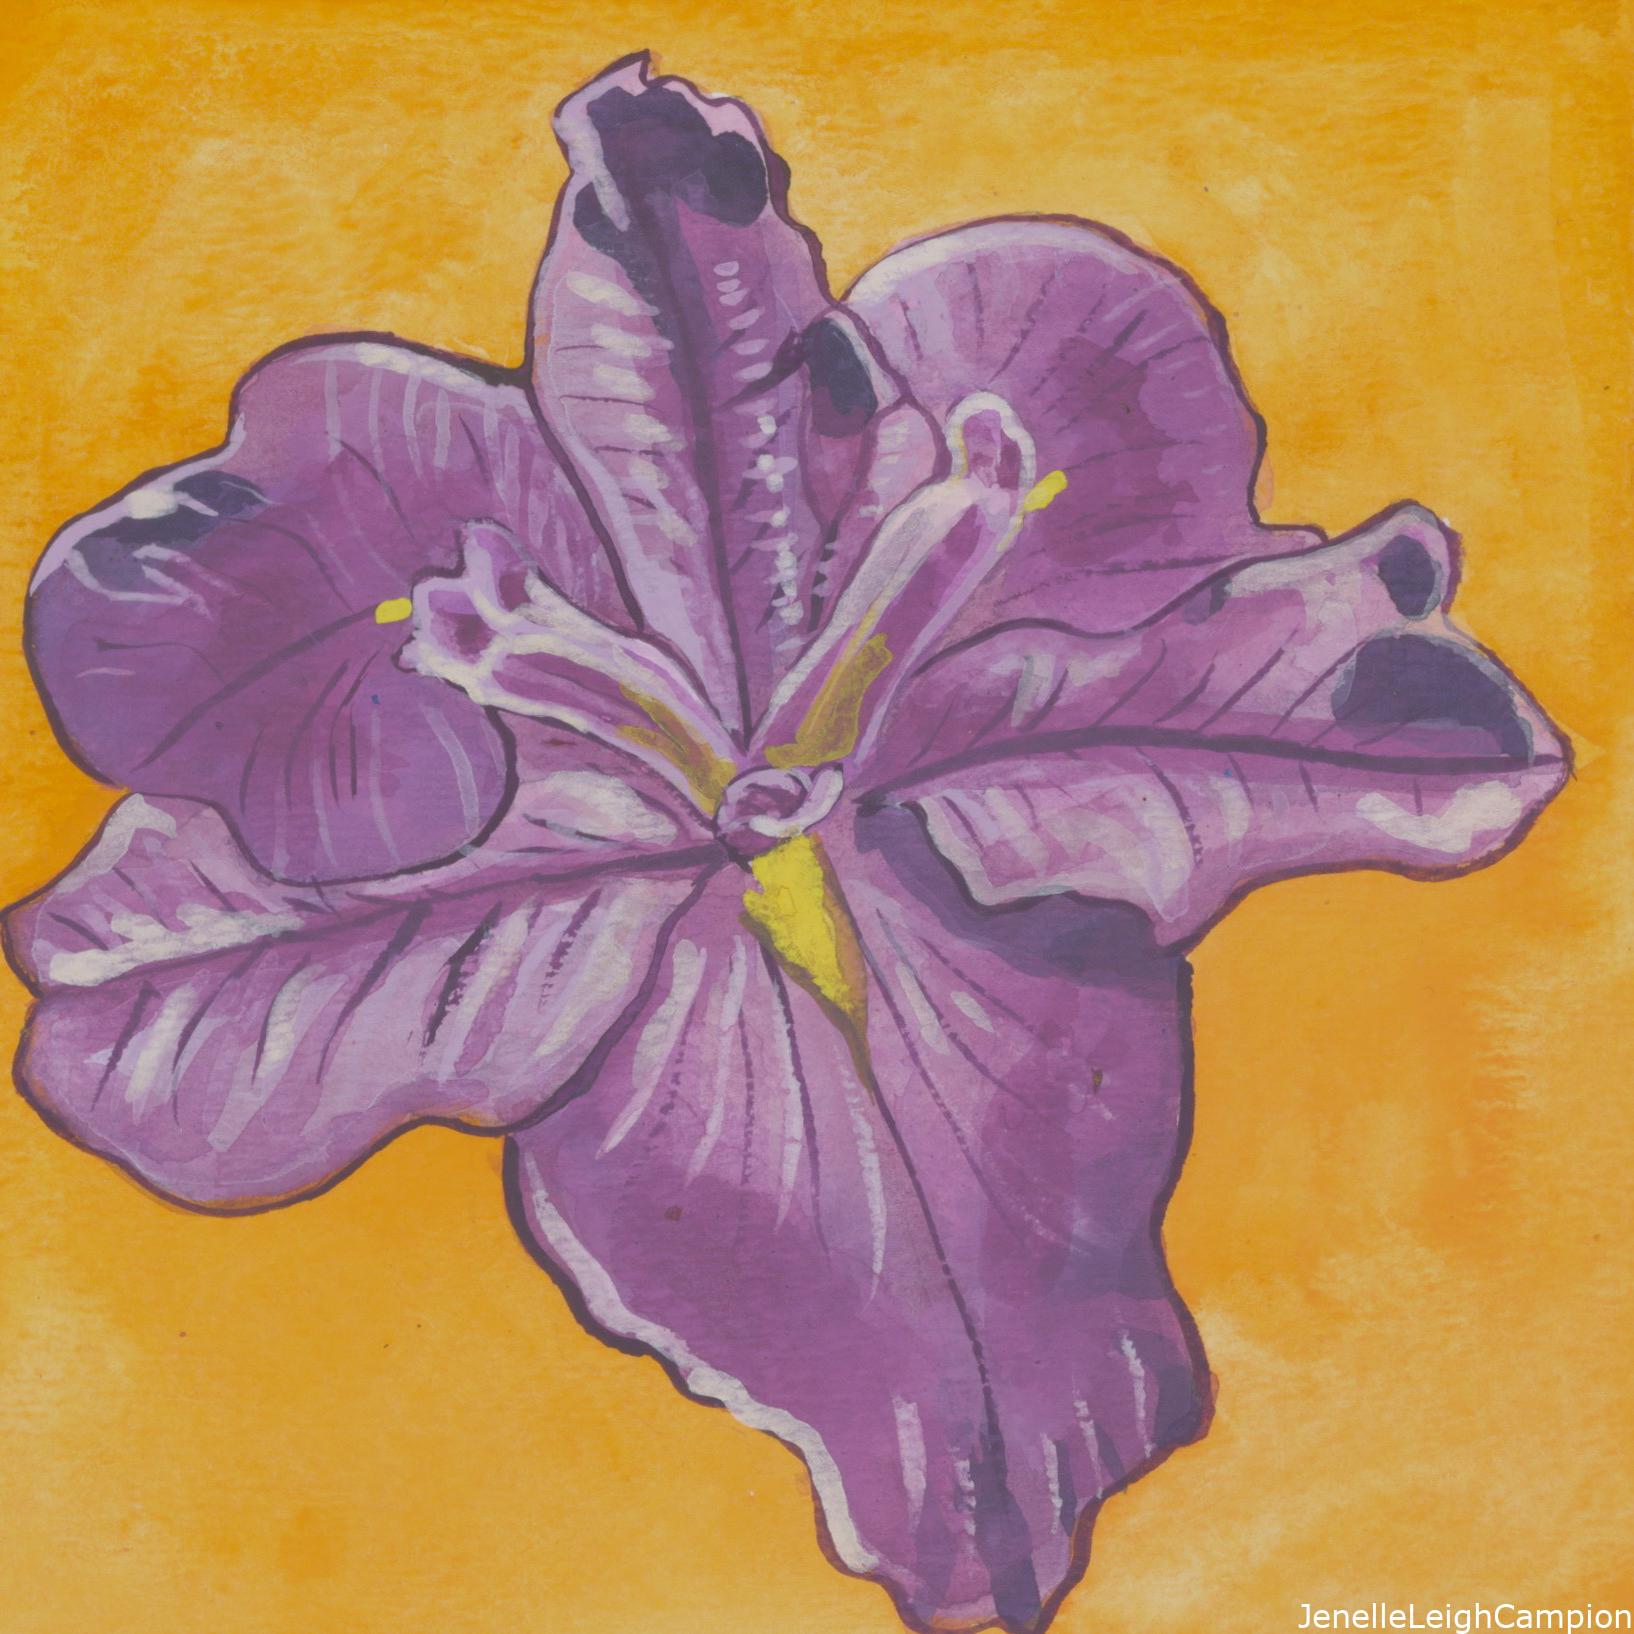 7/7/2014 Purple iris found in the NOMA sculpture garden in MidCity